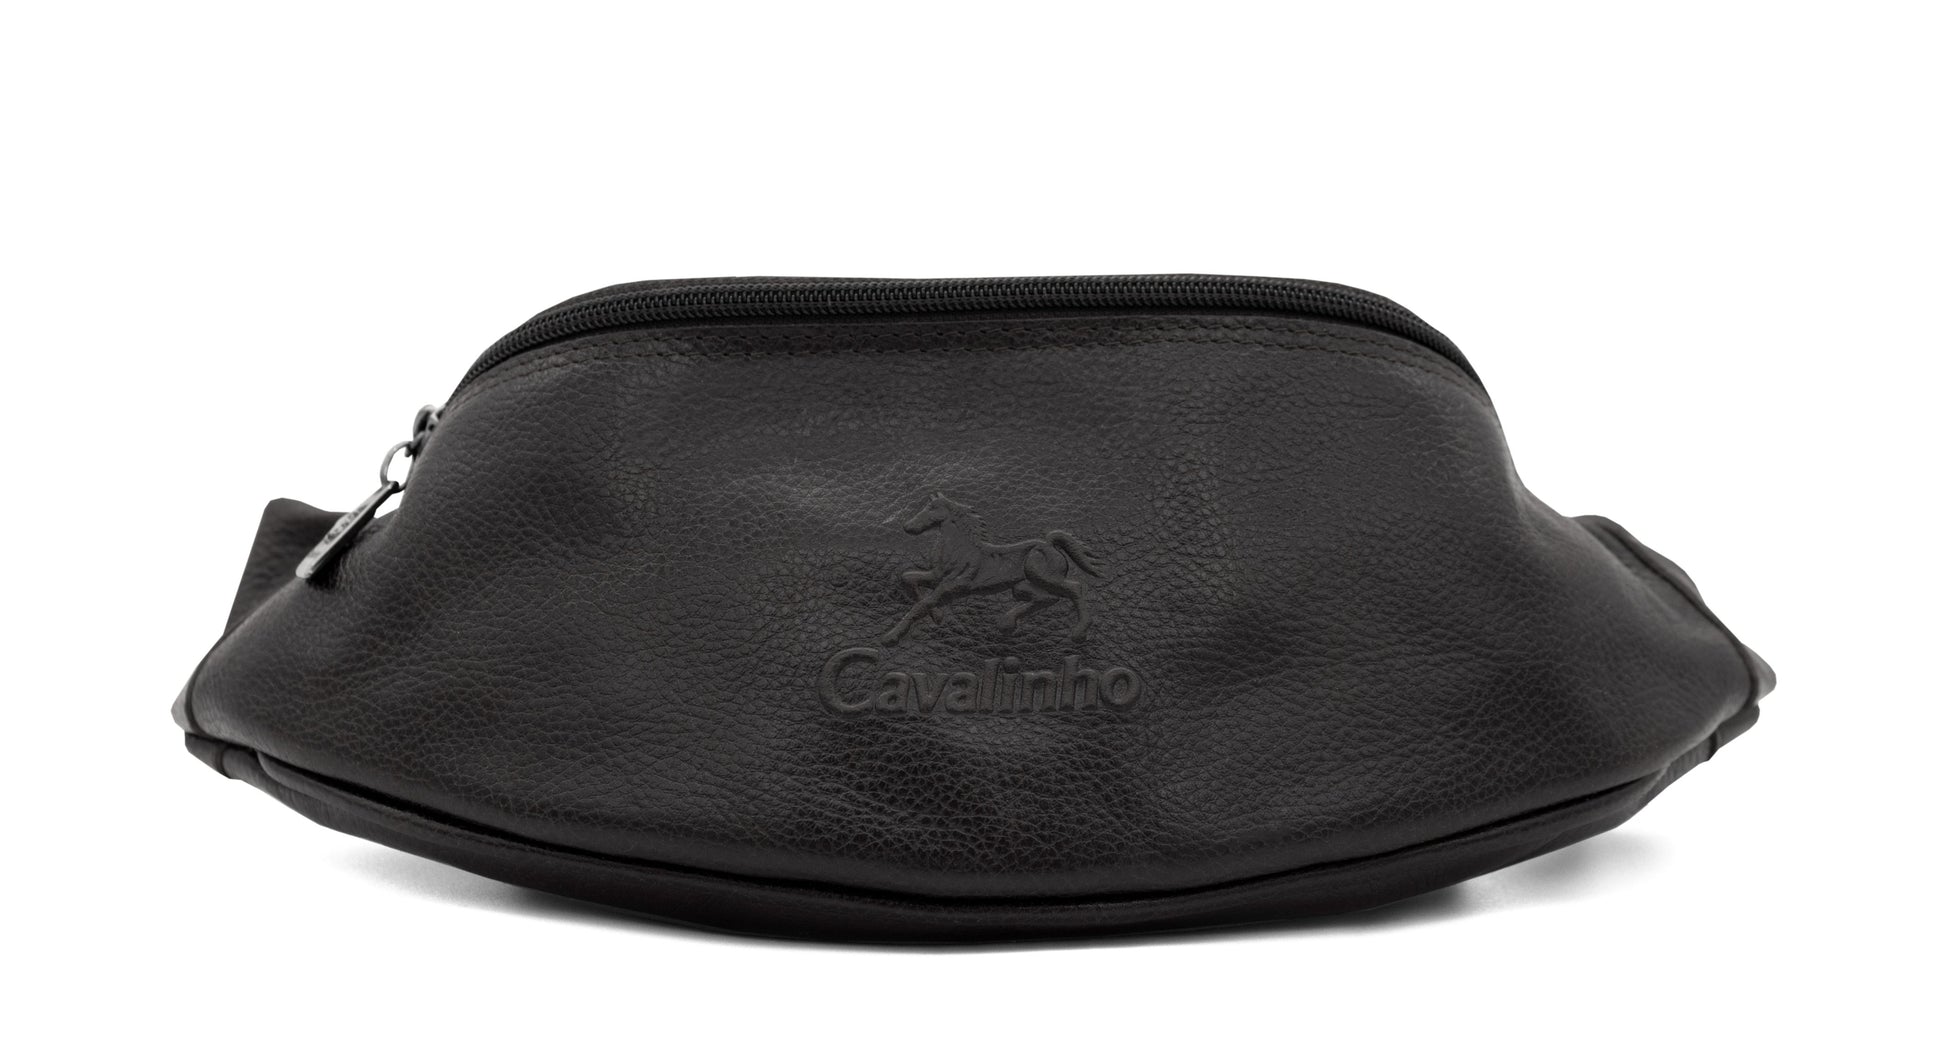 Cavalinho El Estribo Leather Sling Bag - Black - 18320219.01_1